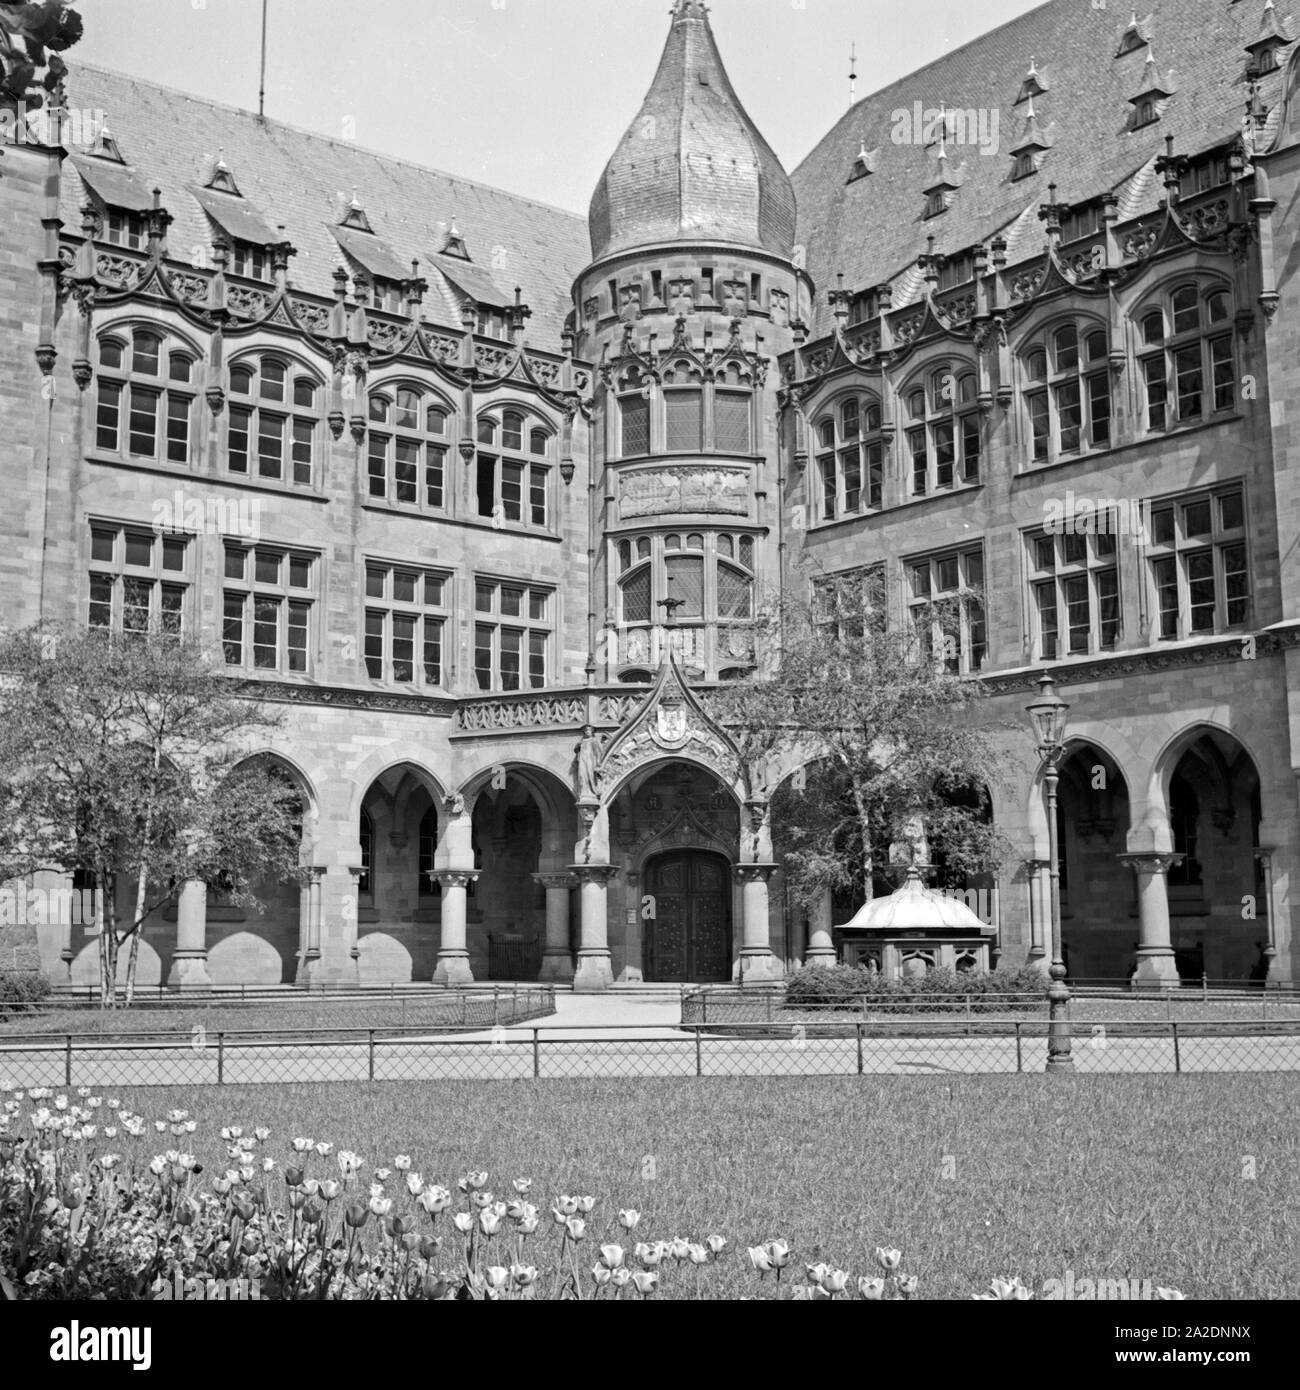 Das Rathaus von Wiesbaden, Deutschland 1930er Jahre. Wiesbaden City Hall, Germania 1930s. Foto Stock